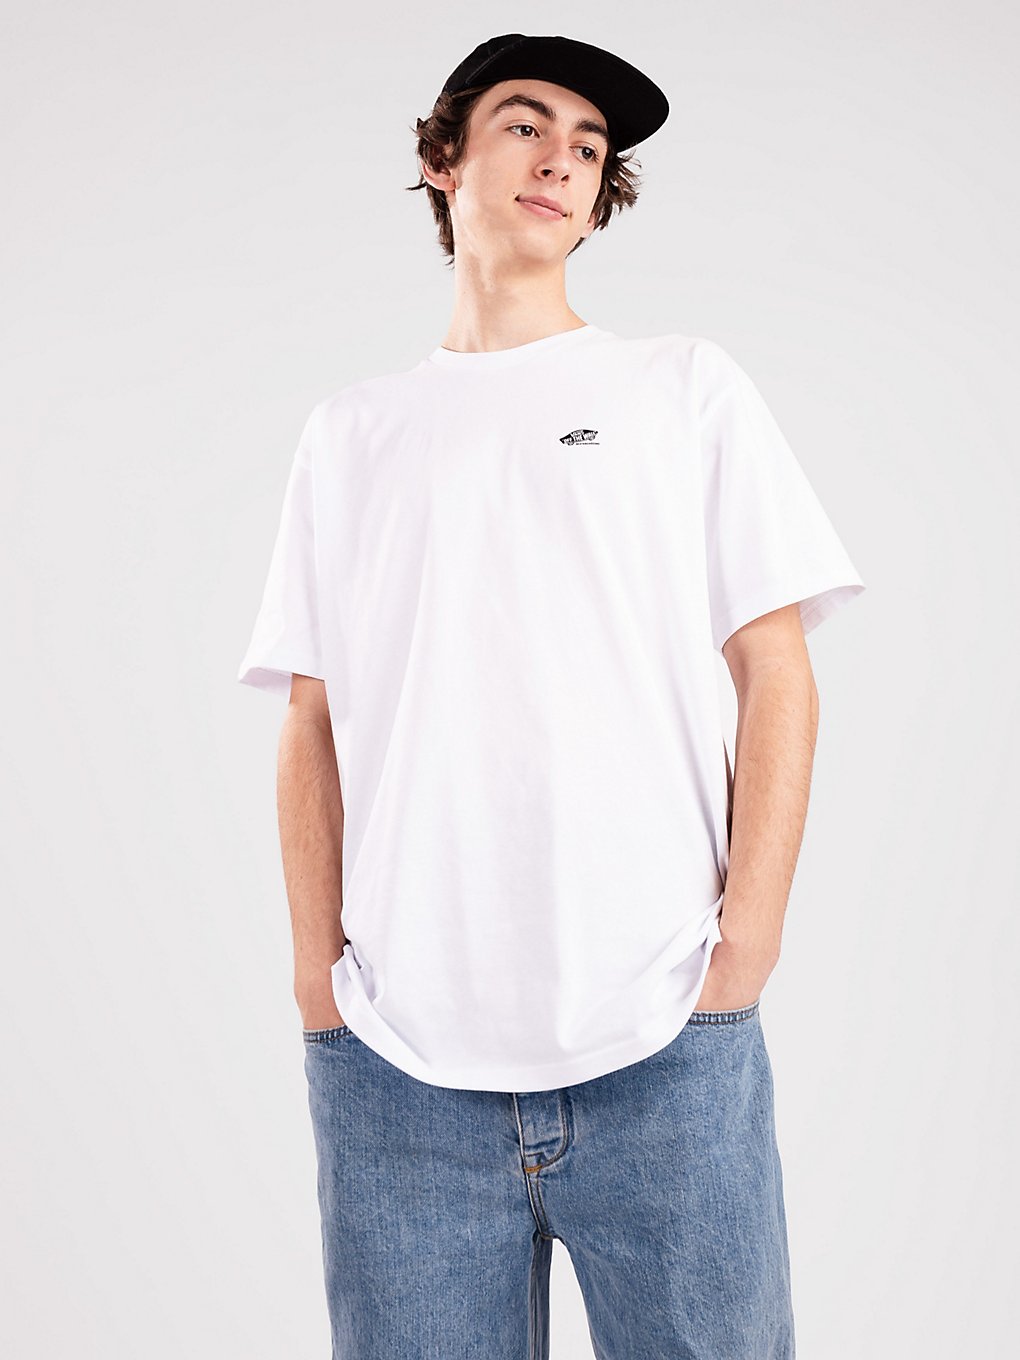 Vans Skate Classics T-Shirt white kaufen